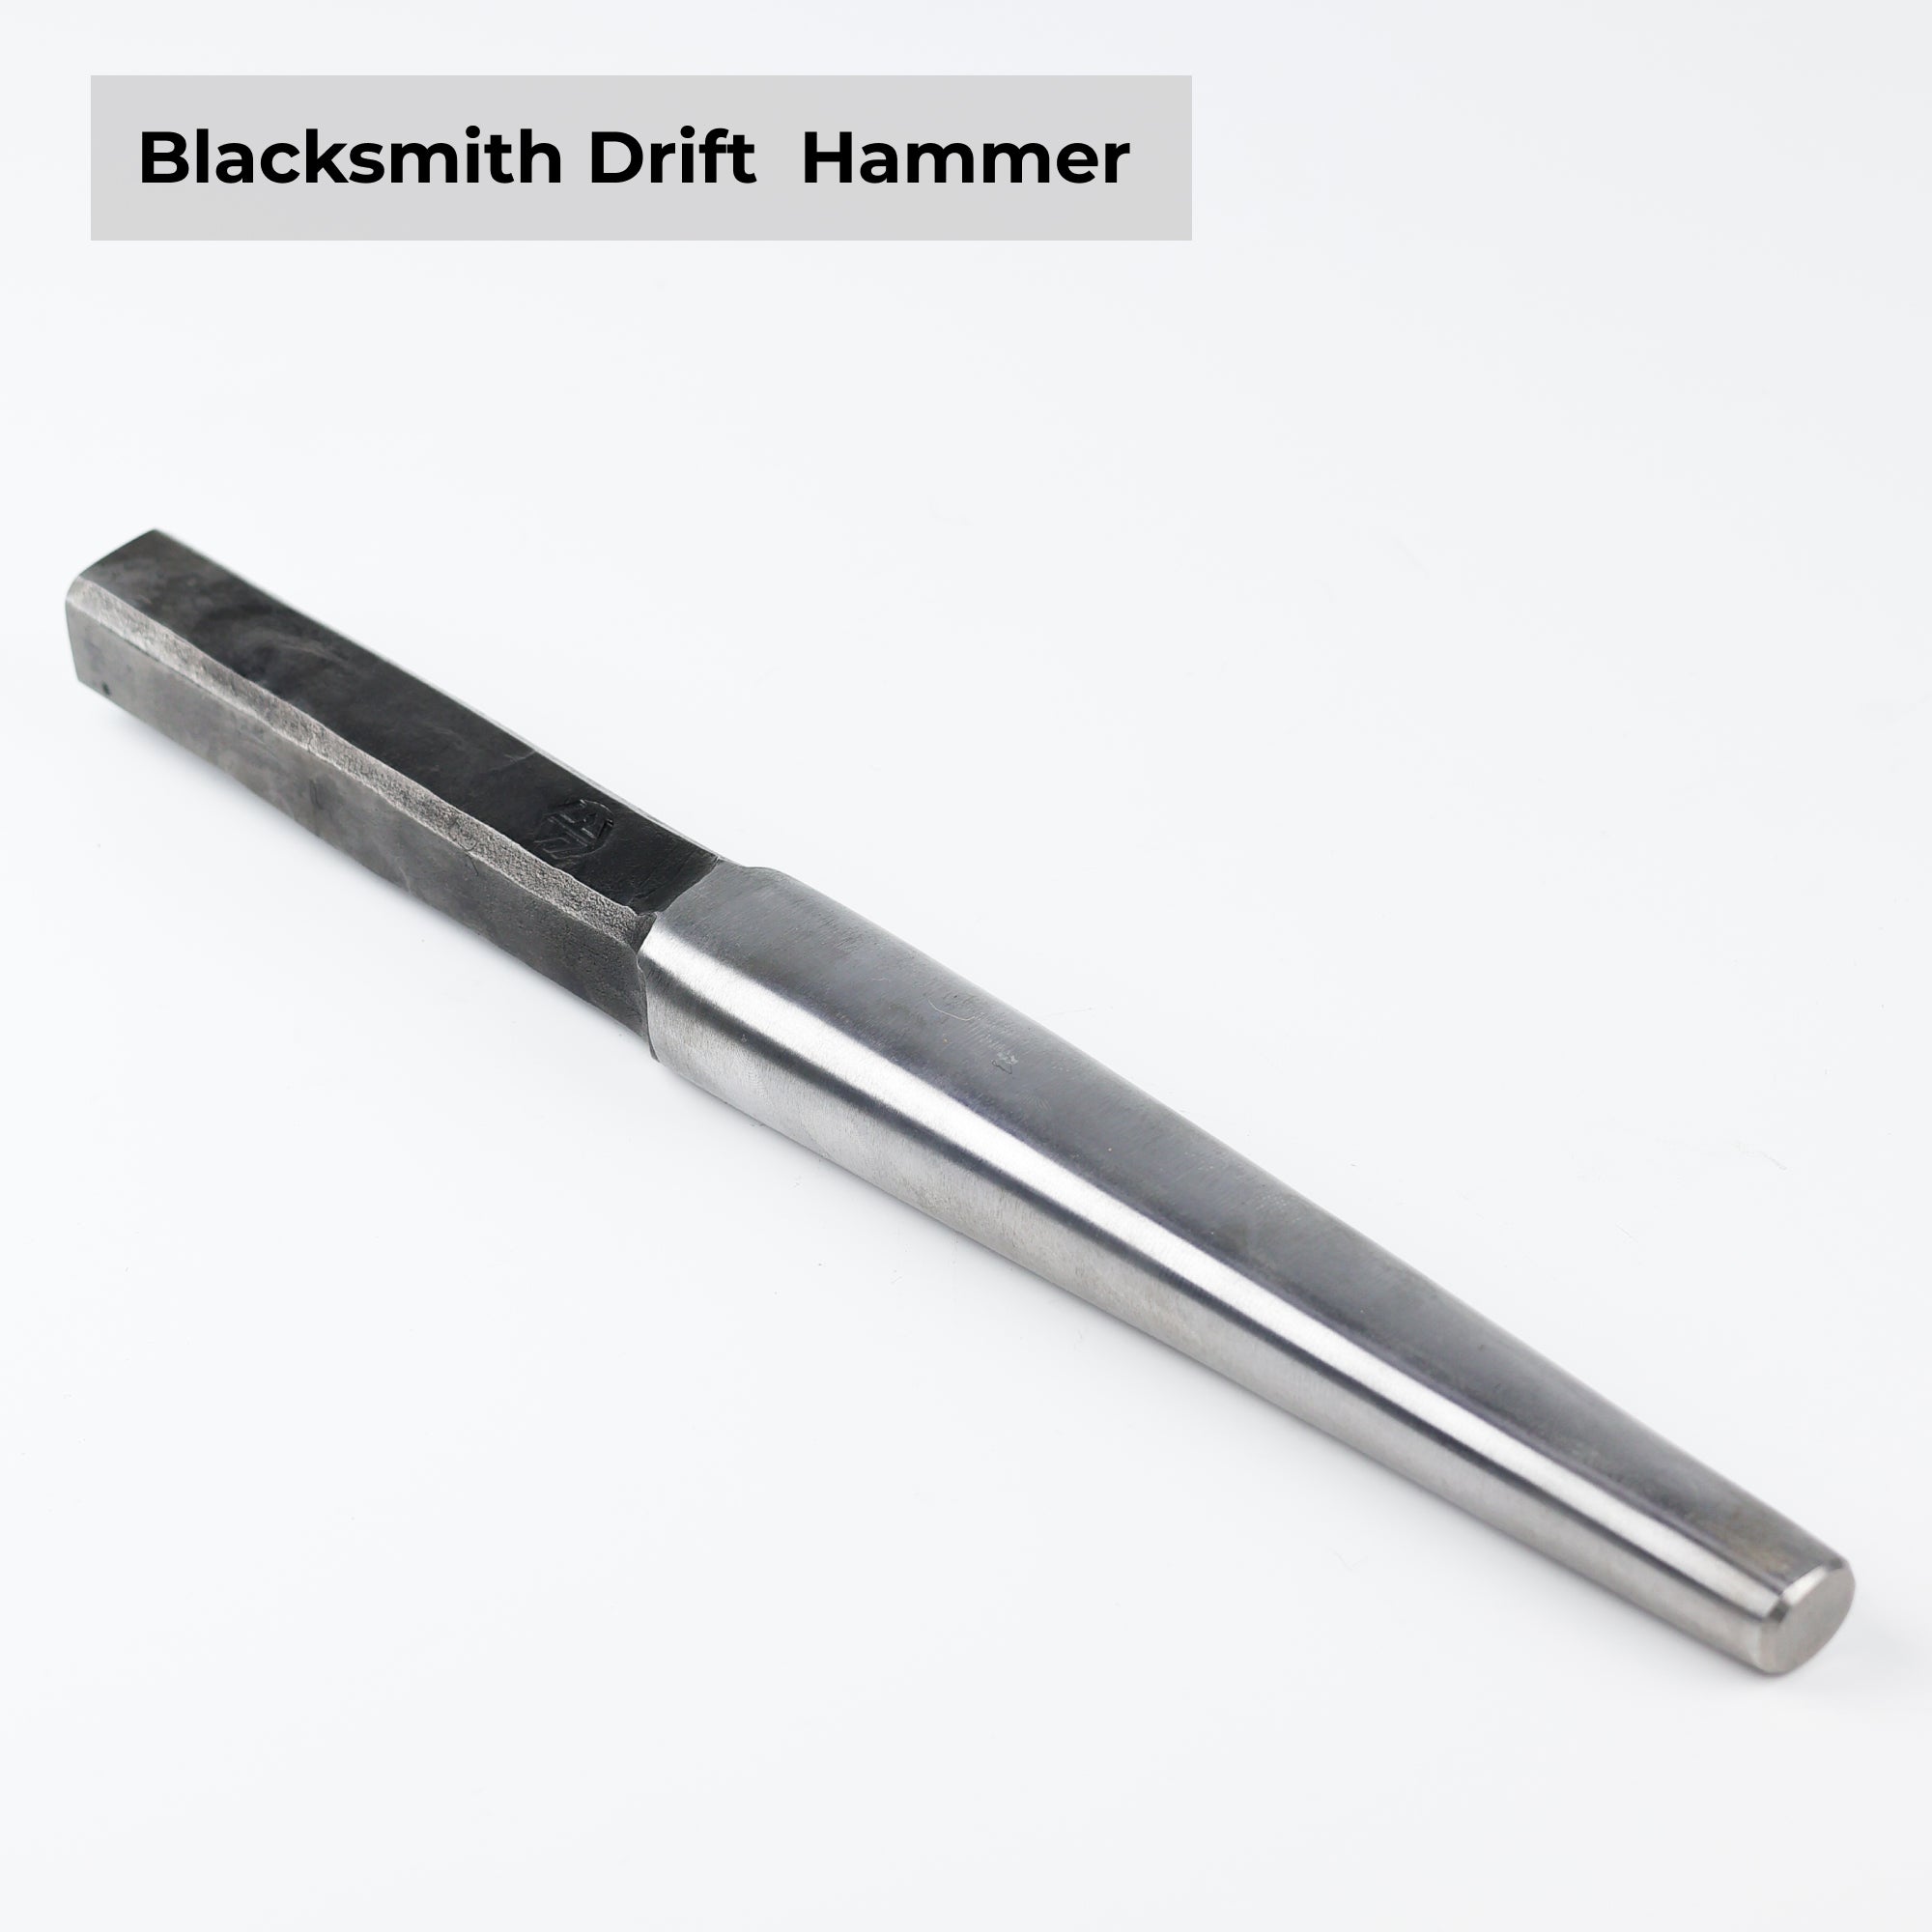 Hammer Eye Drift for blacksmithing